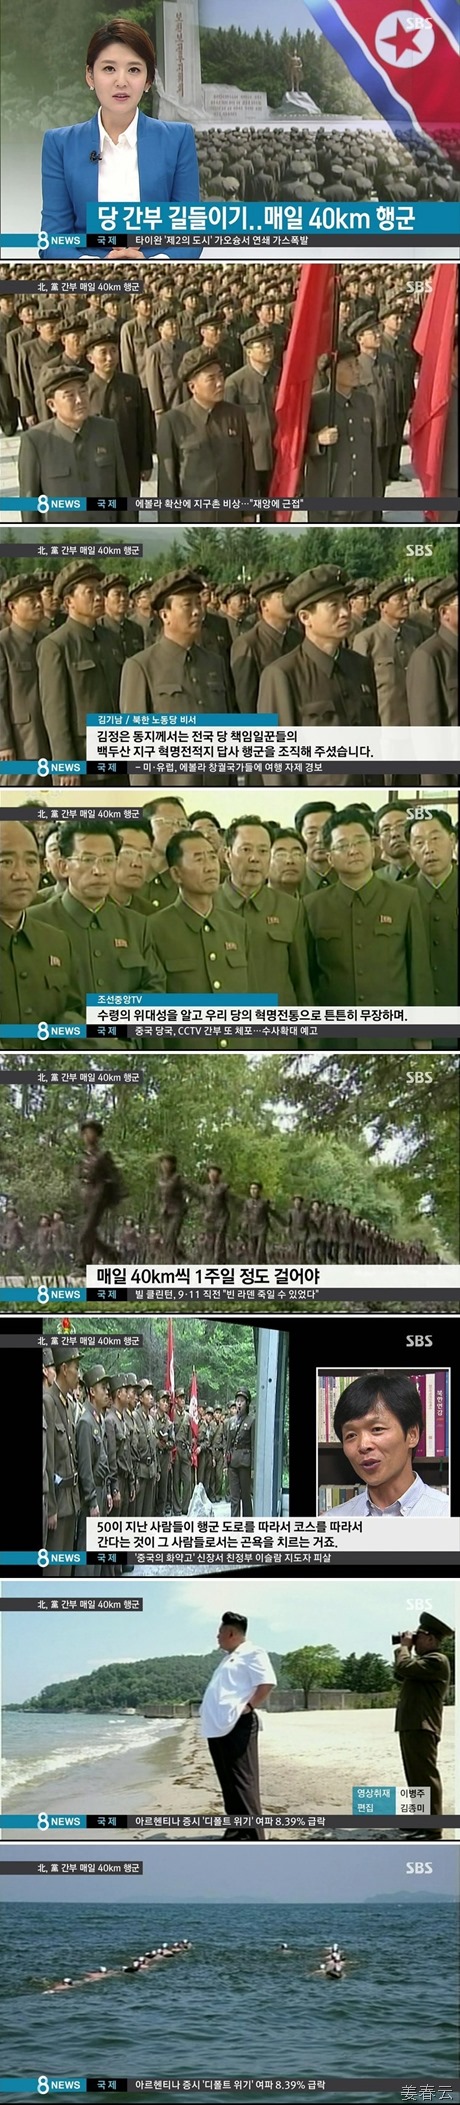 북한에서 쿠데타가 나도 이상하지 않을만한 당 간부 길들이기 - 매일 40km 행군이 그 방법